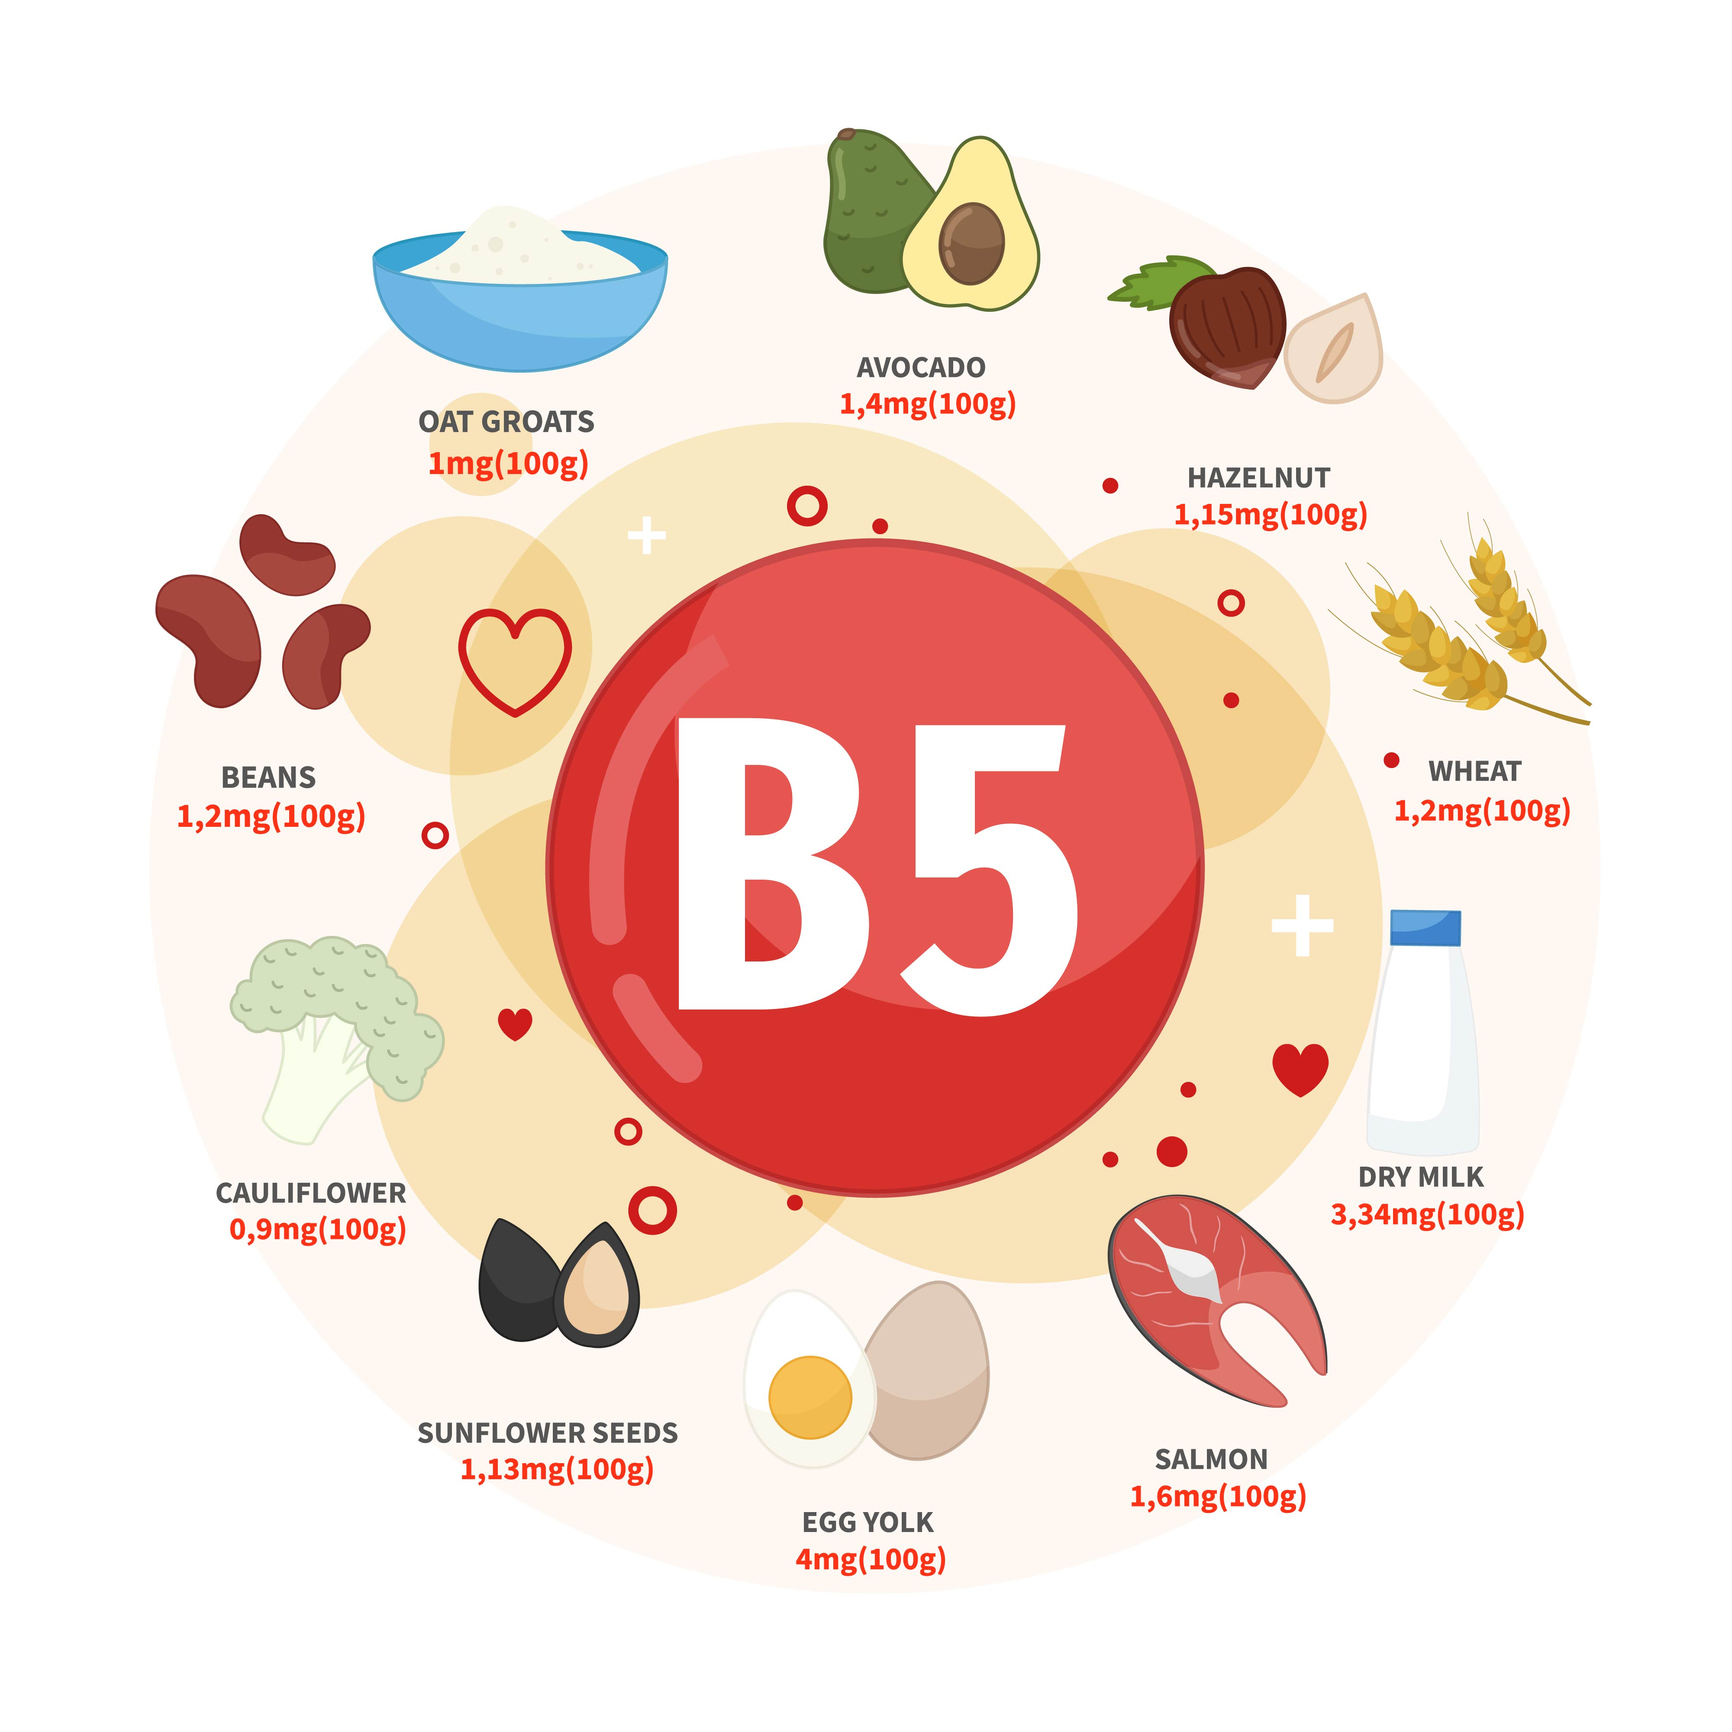 Medzi najlepšie zdroje vitamínu B5 patrí avokádo, lieskové orechy, pšenica, mlieko, losos, vajcia, slnečnicové semiačka, karfiol, fazuľa, ovsené vločky. Zdroj foto: Getty Images